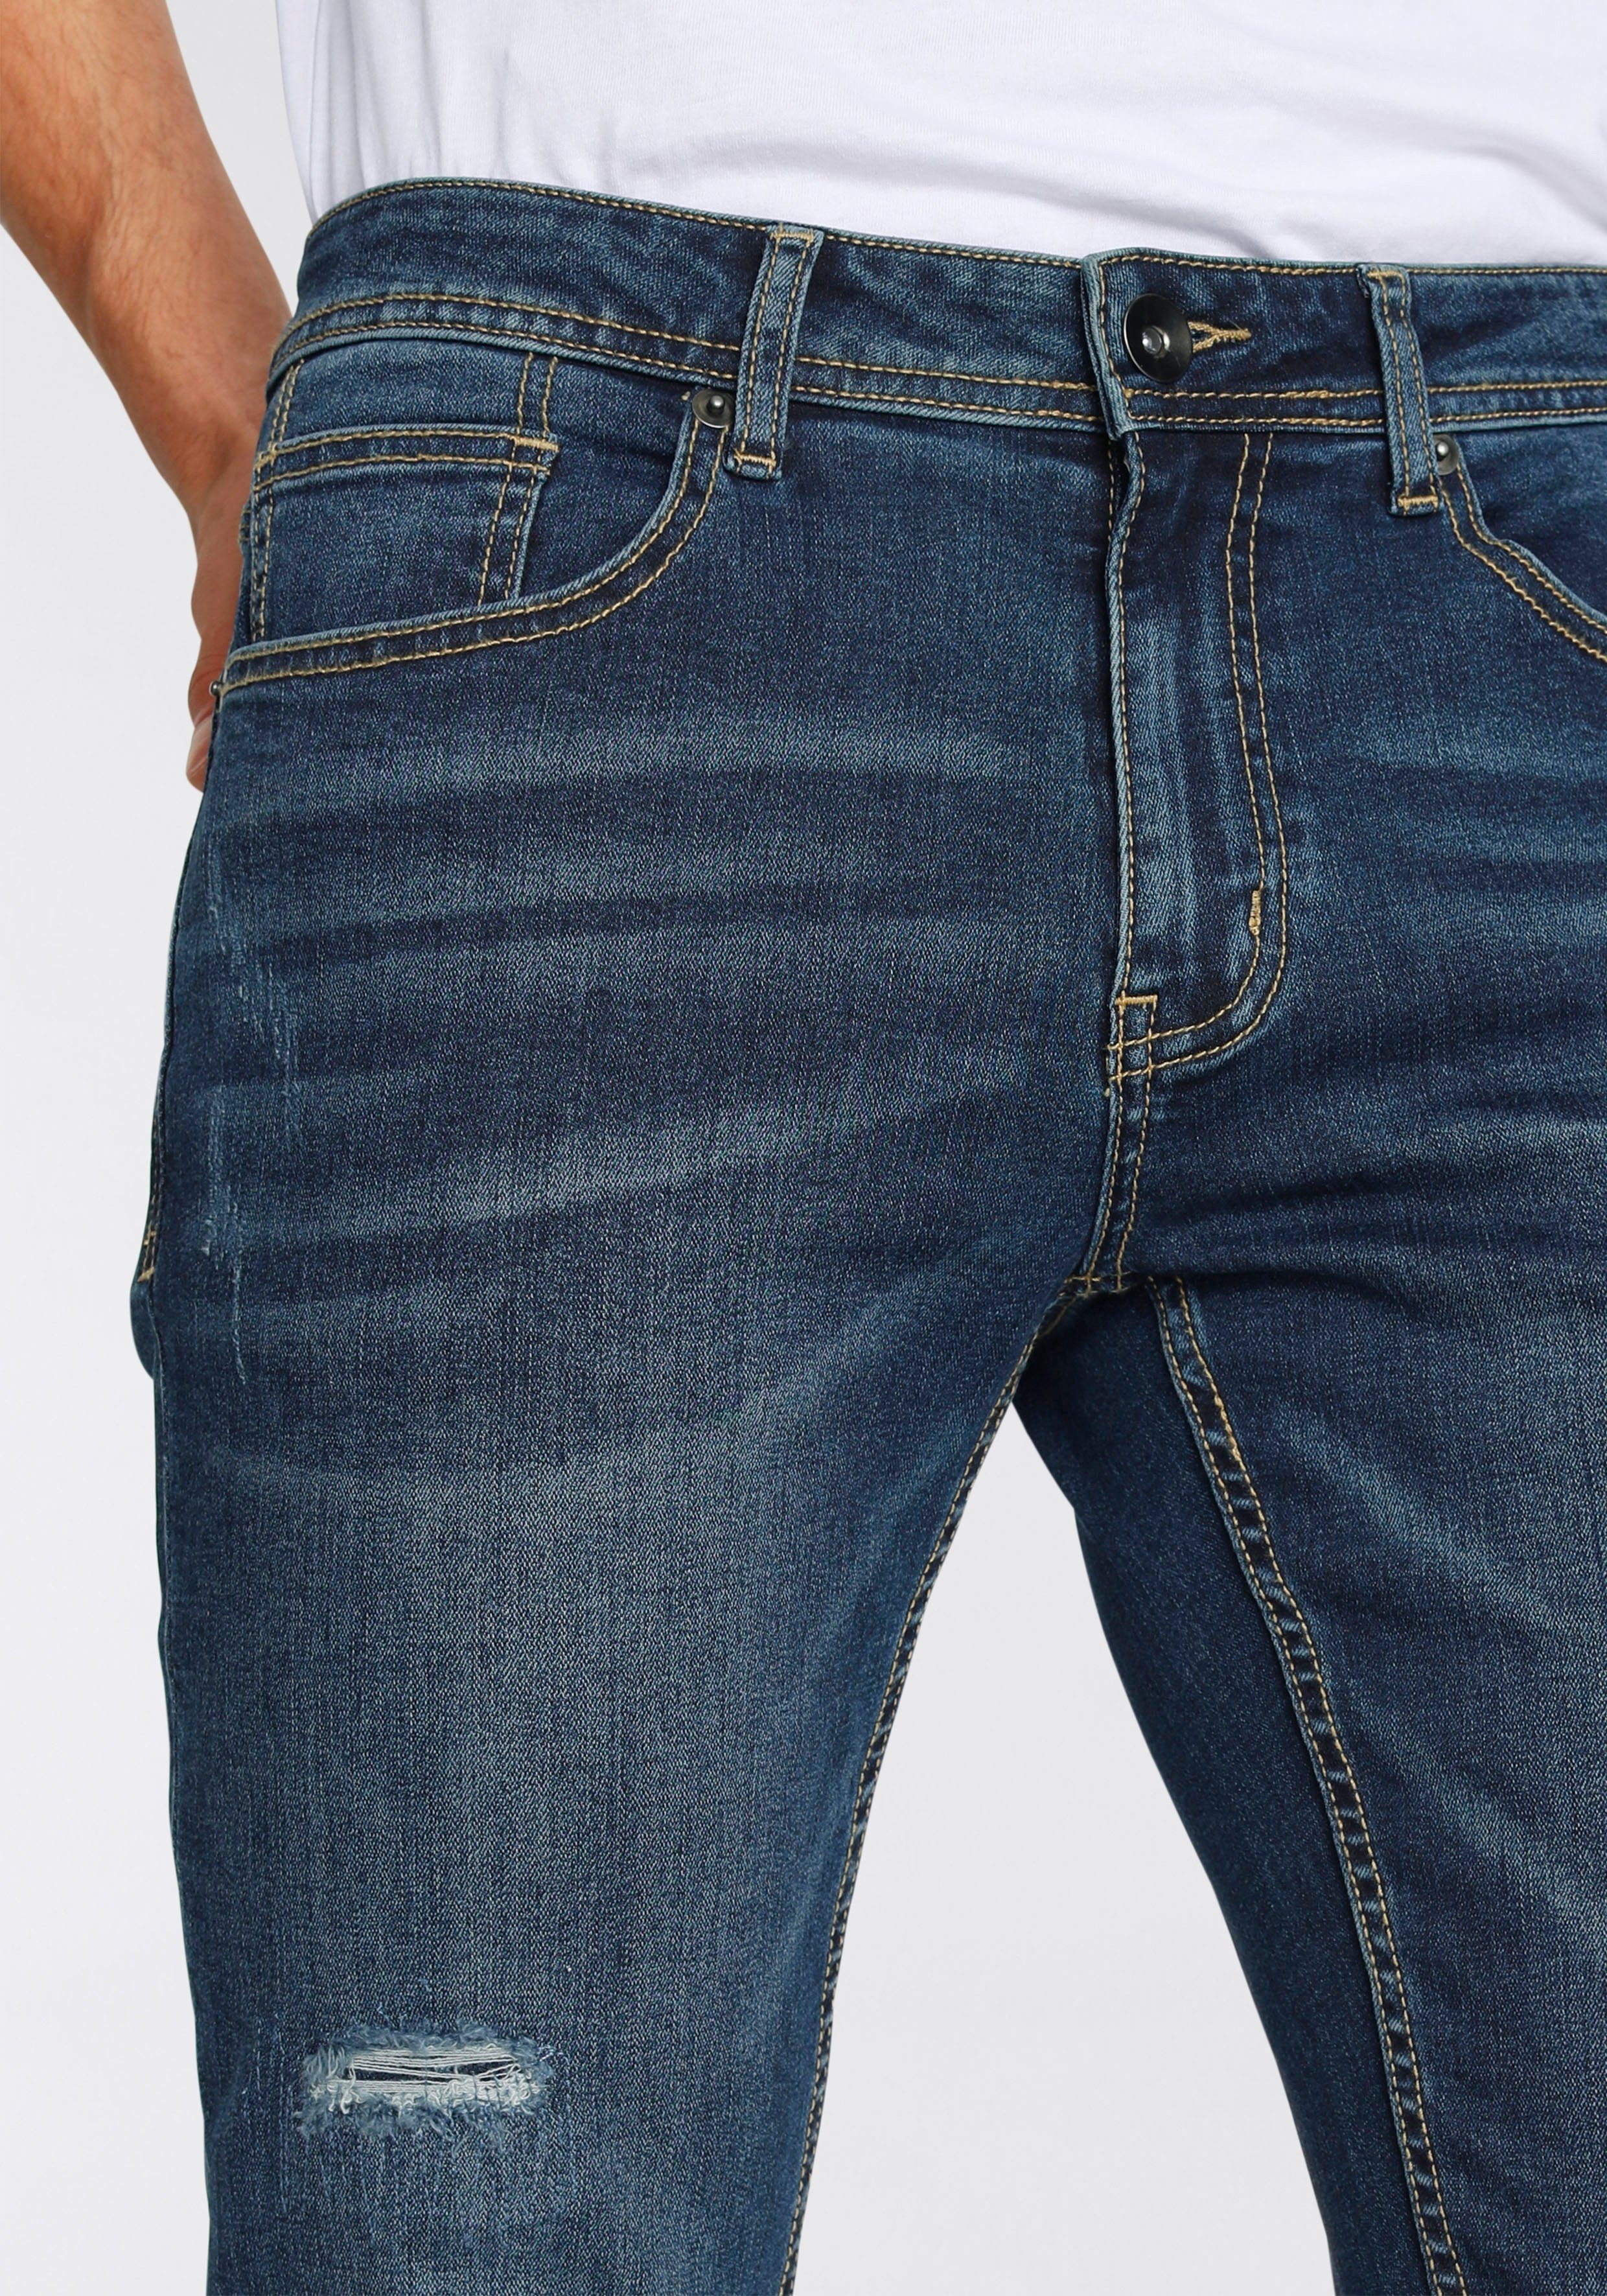 AJC Straight-Jeans mit Abriebeffekten an Beinen den blue dark